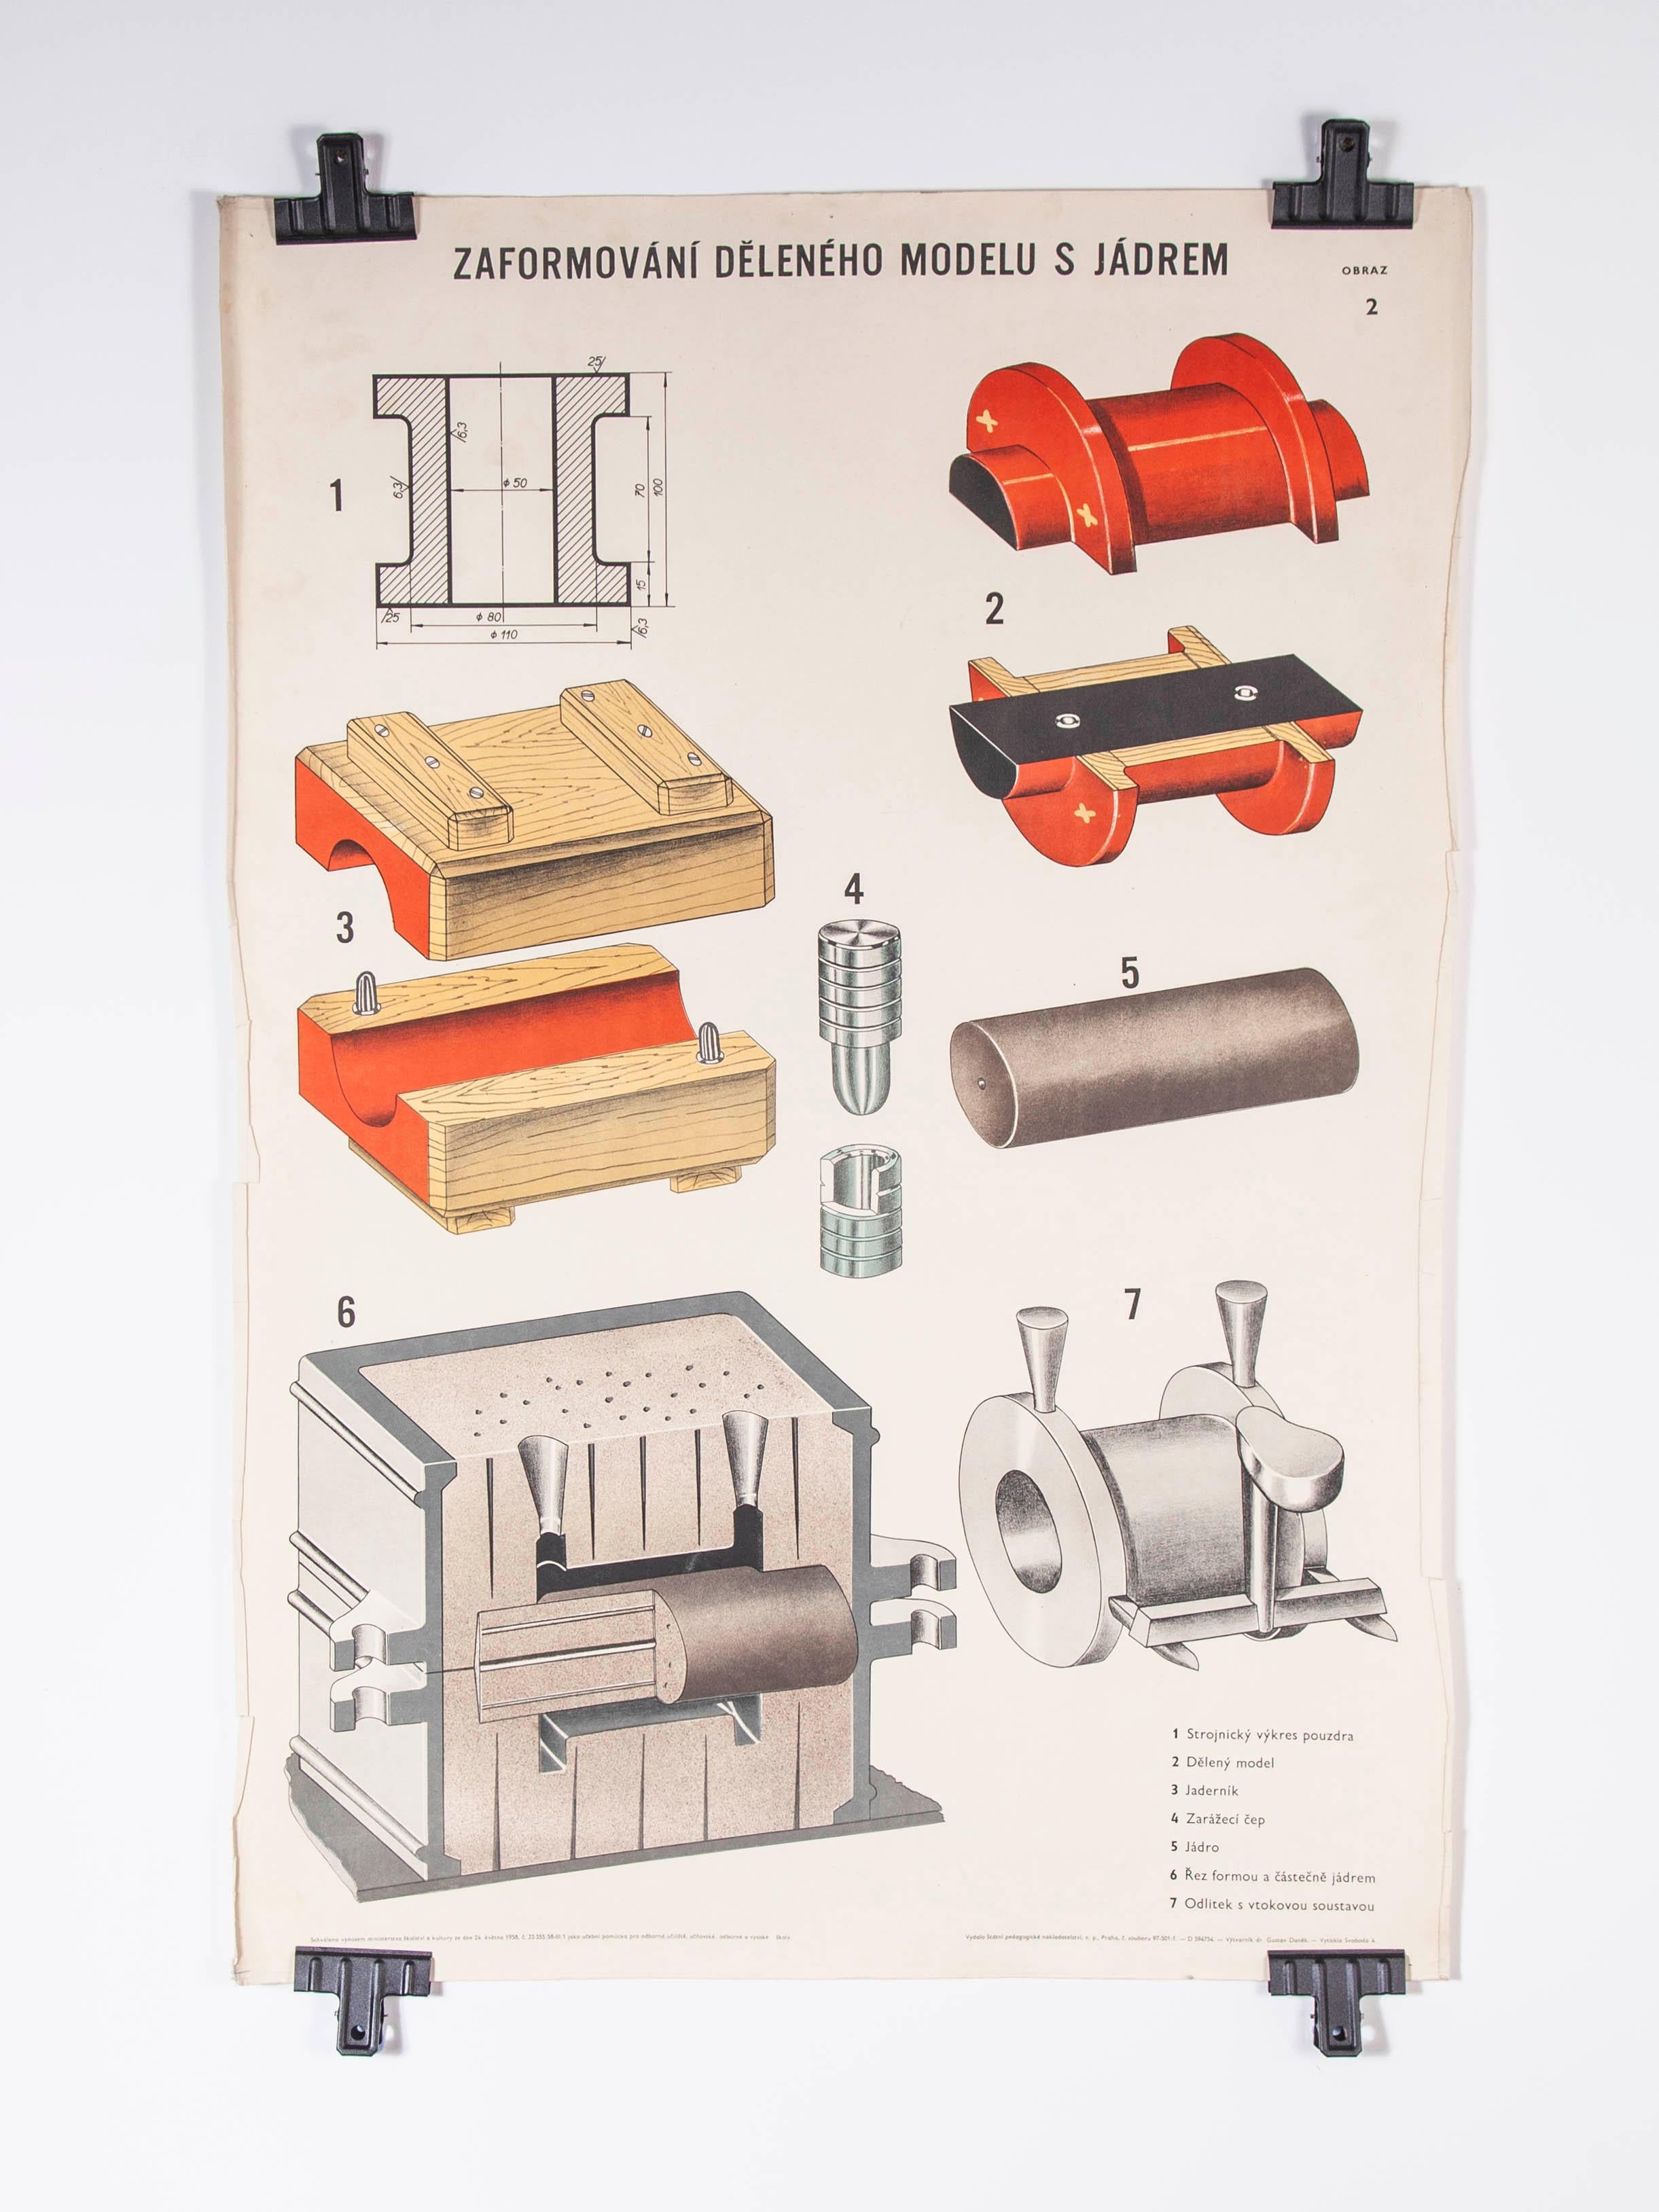 Dessin industriel technique tchèque - poster d'ingénierie de moules de fonderie - 7

Provenant d'un ancien atelier d'ingénierie en République tchèque, une étonnante série de dessins techniques industriels expliquant le processus de moulage au